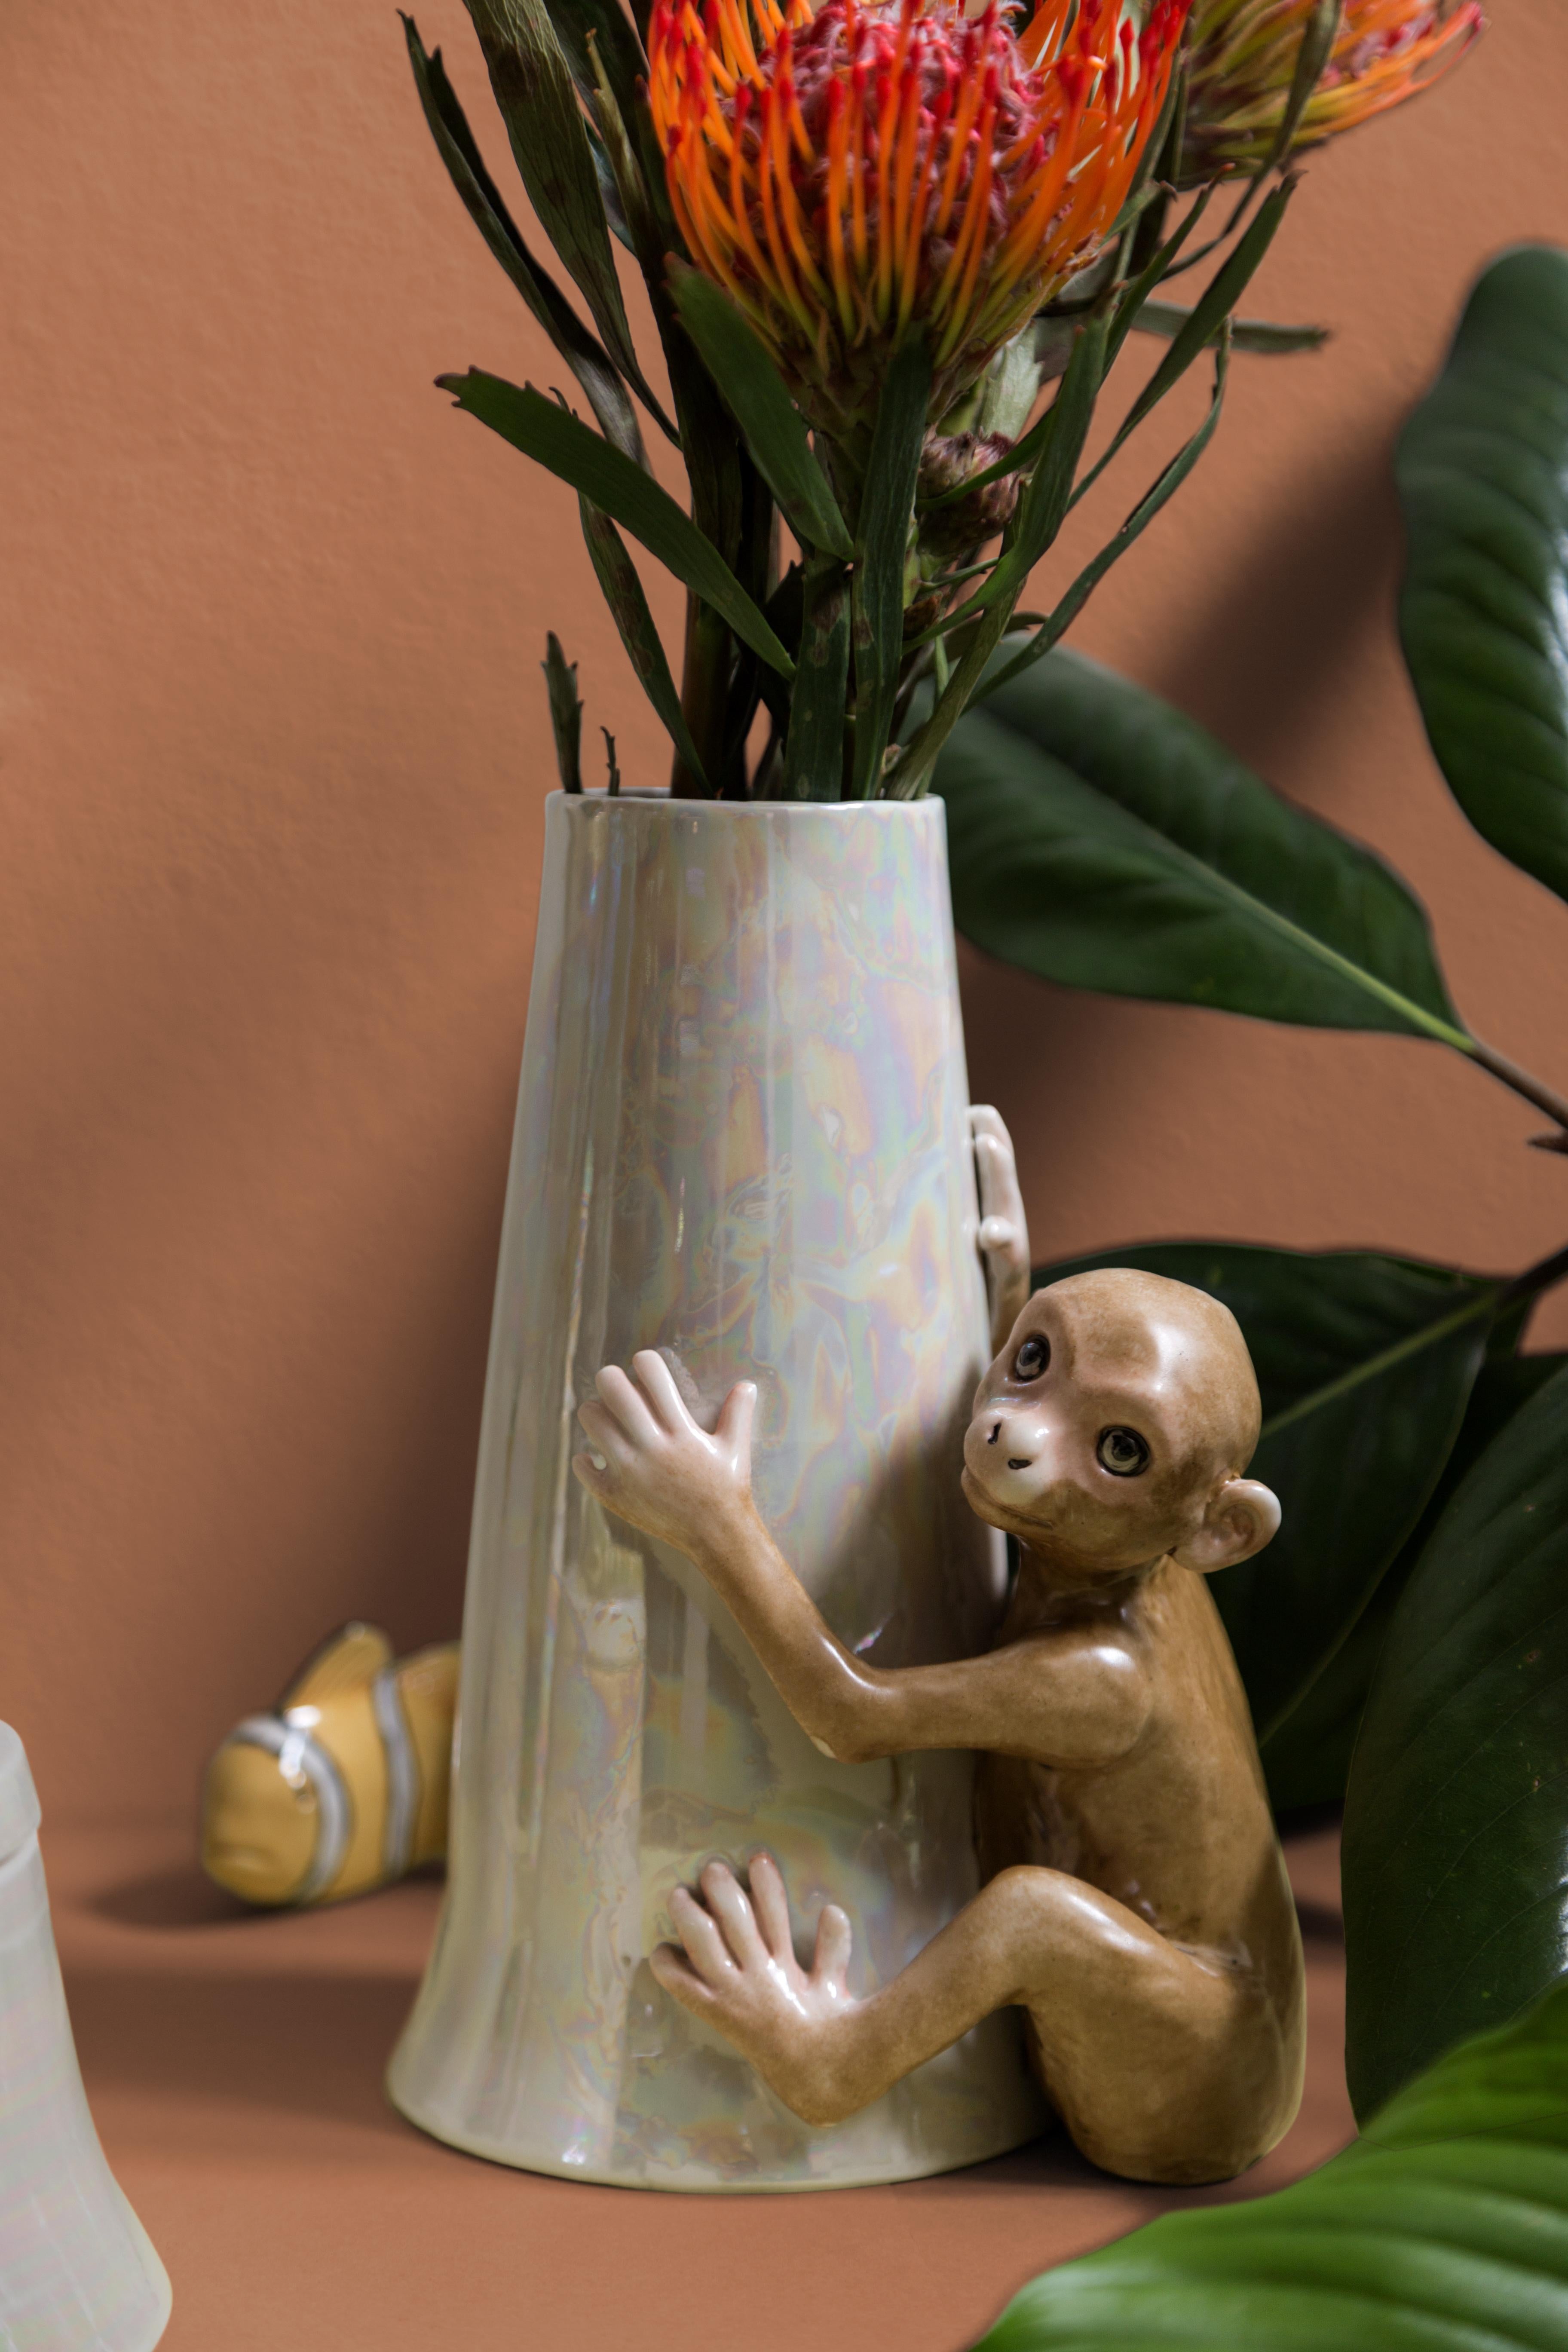 Cette sculpture en porcelaine italienne fait partie de Vito Nesta Grand Tour. Réalisé en porcelaine de Capodimonte avec une finition brillante et irisée. Ce vase est orné d'un singe peint à la main.